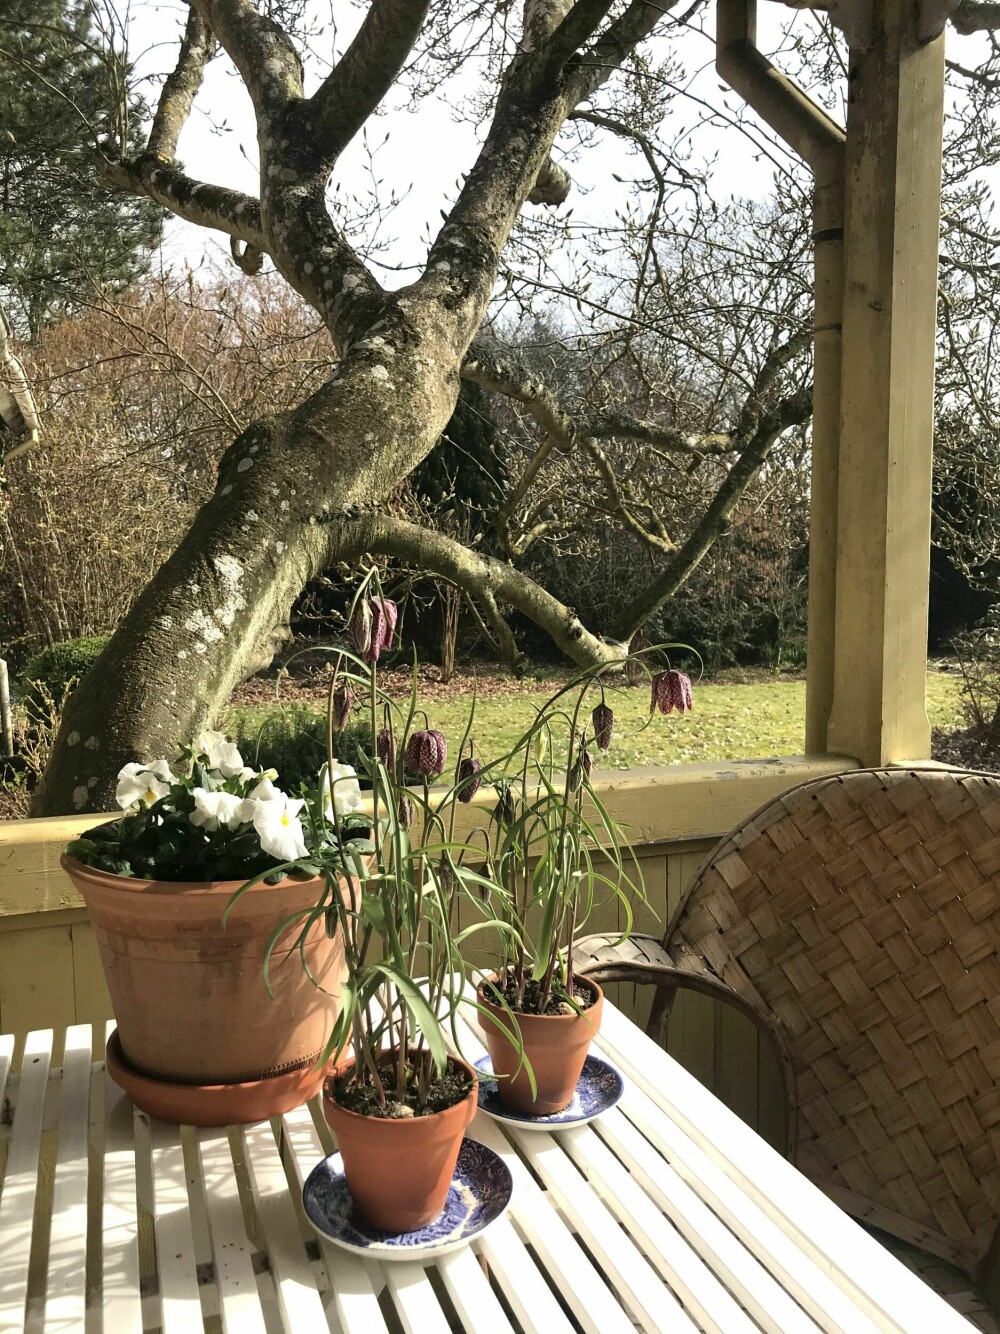 Hos Marianne står ruteliljer sammen med stemorsblomster på verandaen. Magnoliatreet i bakgrunnen blomstrer også snart. 